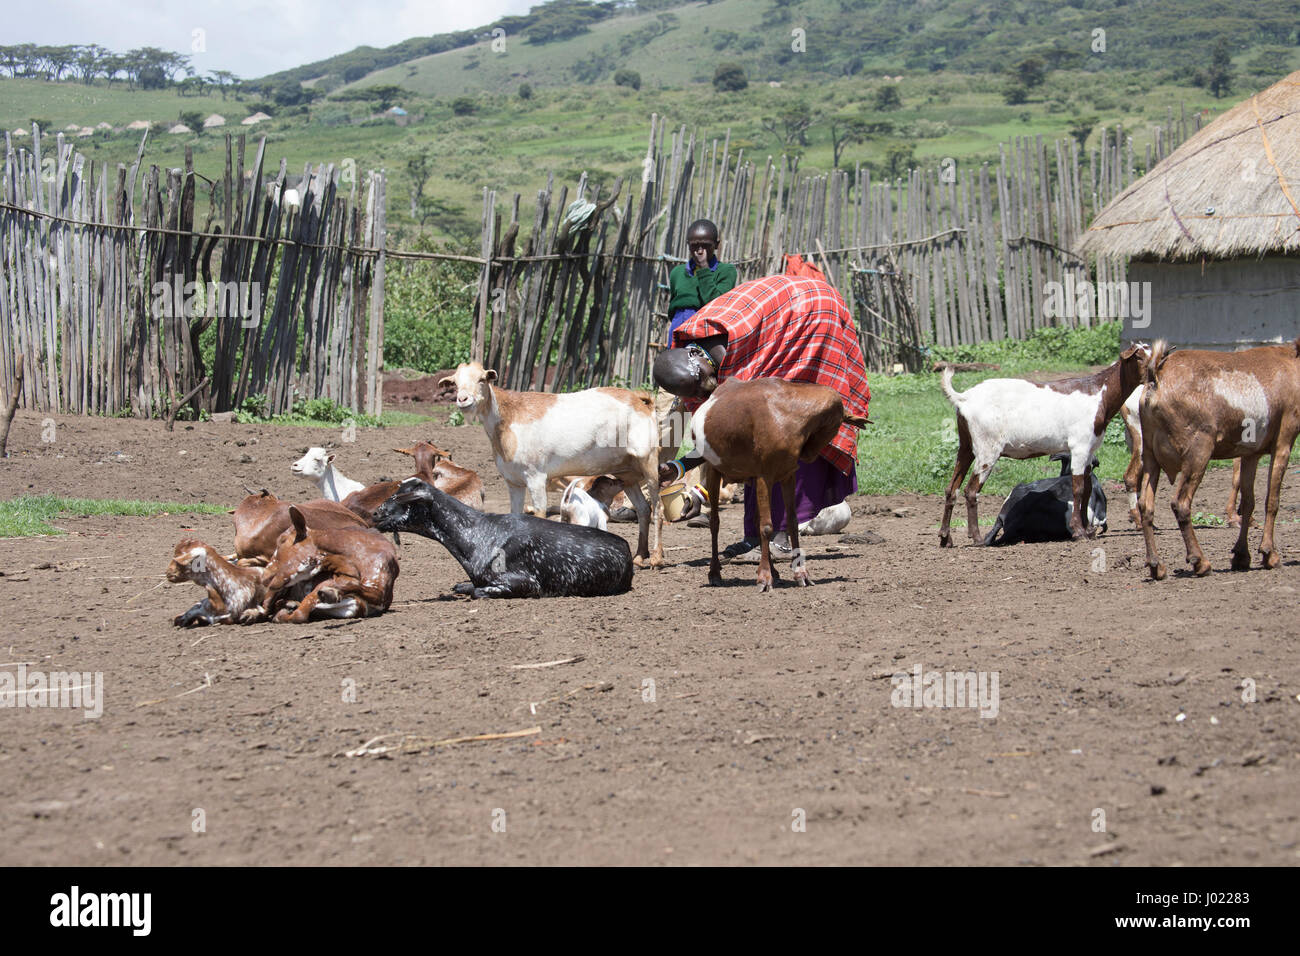 Zone de conservation de Ngorongoro, en Tanzanie - mars 8, 2017 : masaï chèvre à traire dans village de la Ngorongoro Conservation Area, Tanzania, Africa. Banque D'Images